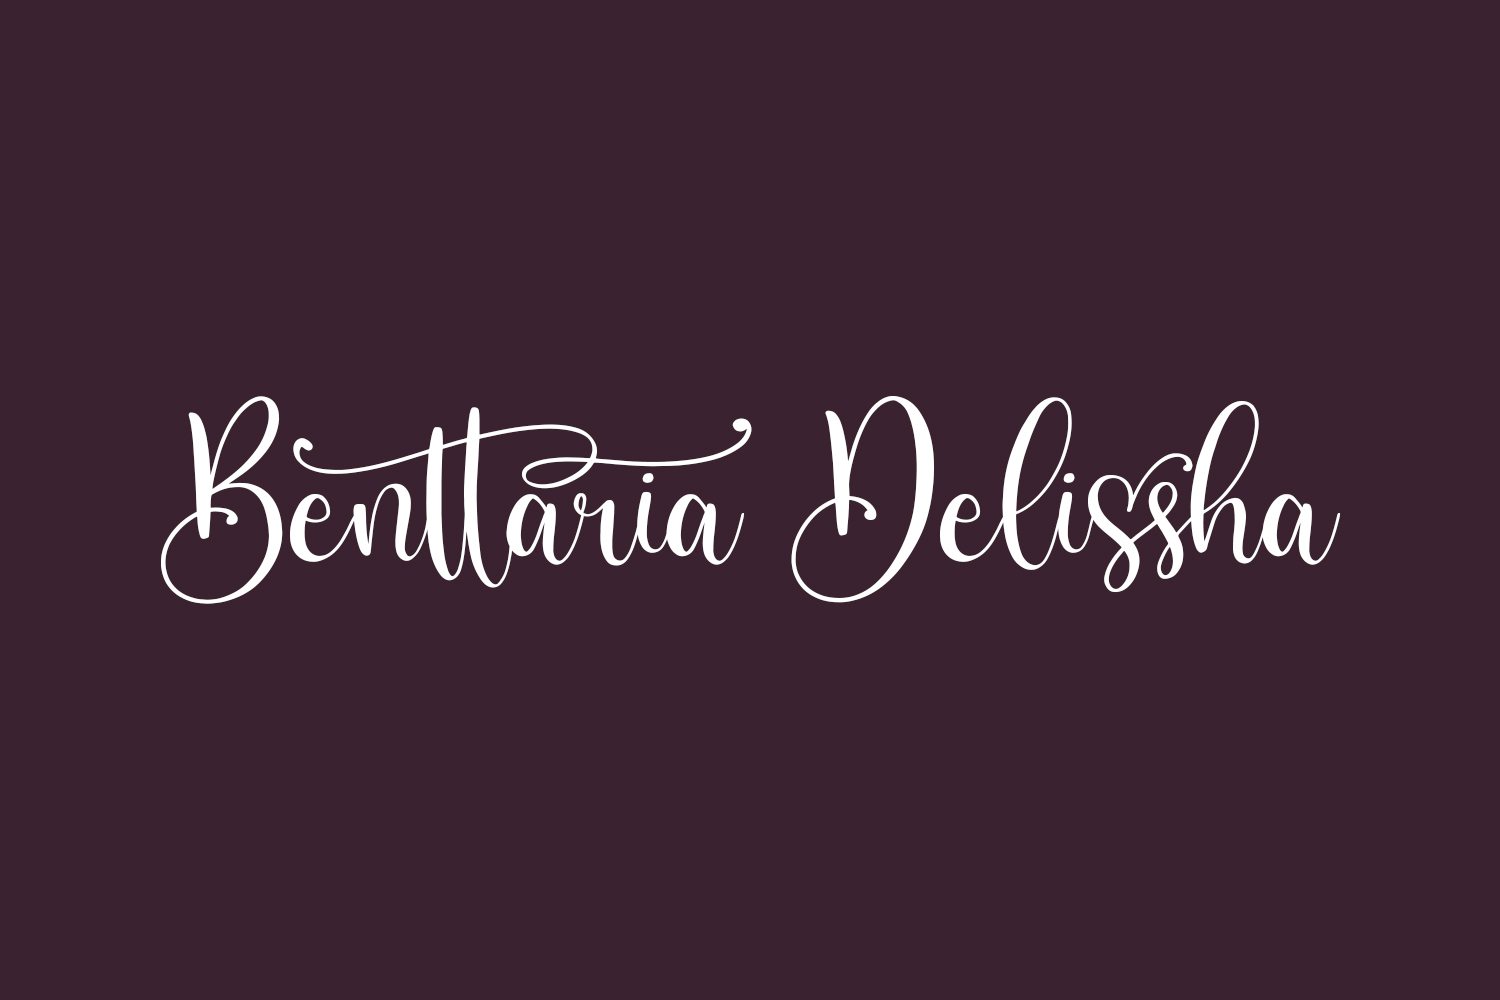 Benttaria Delissha Free Font